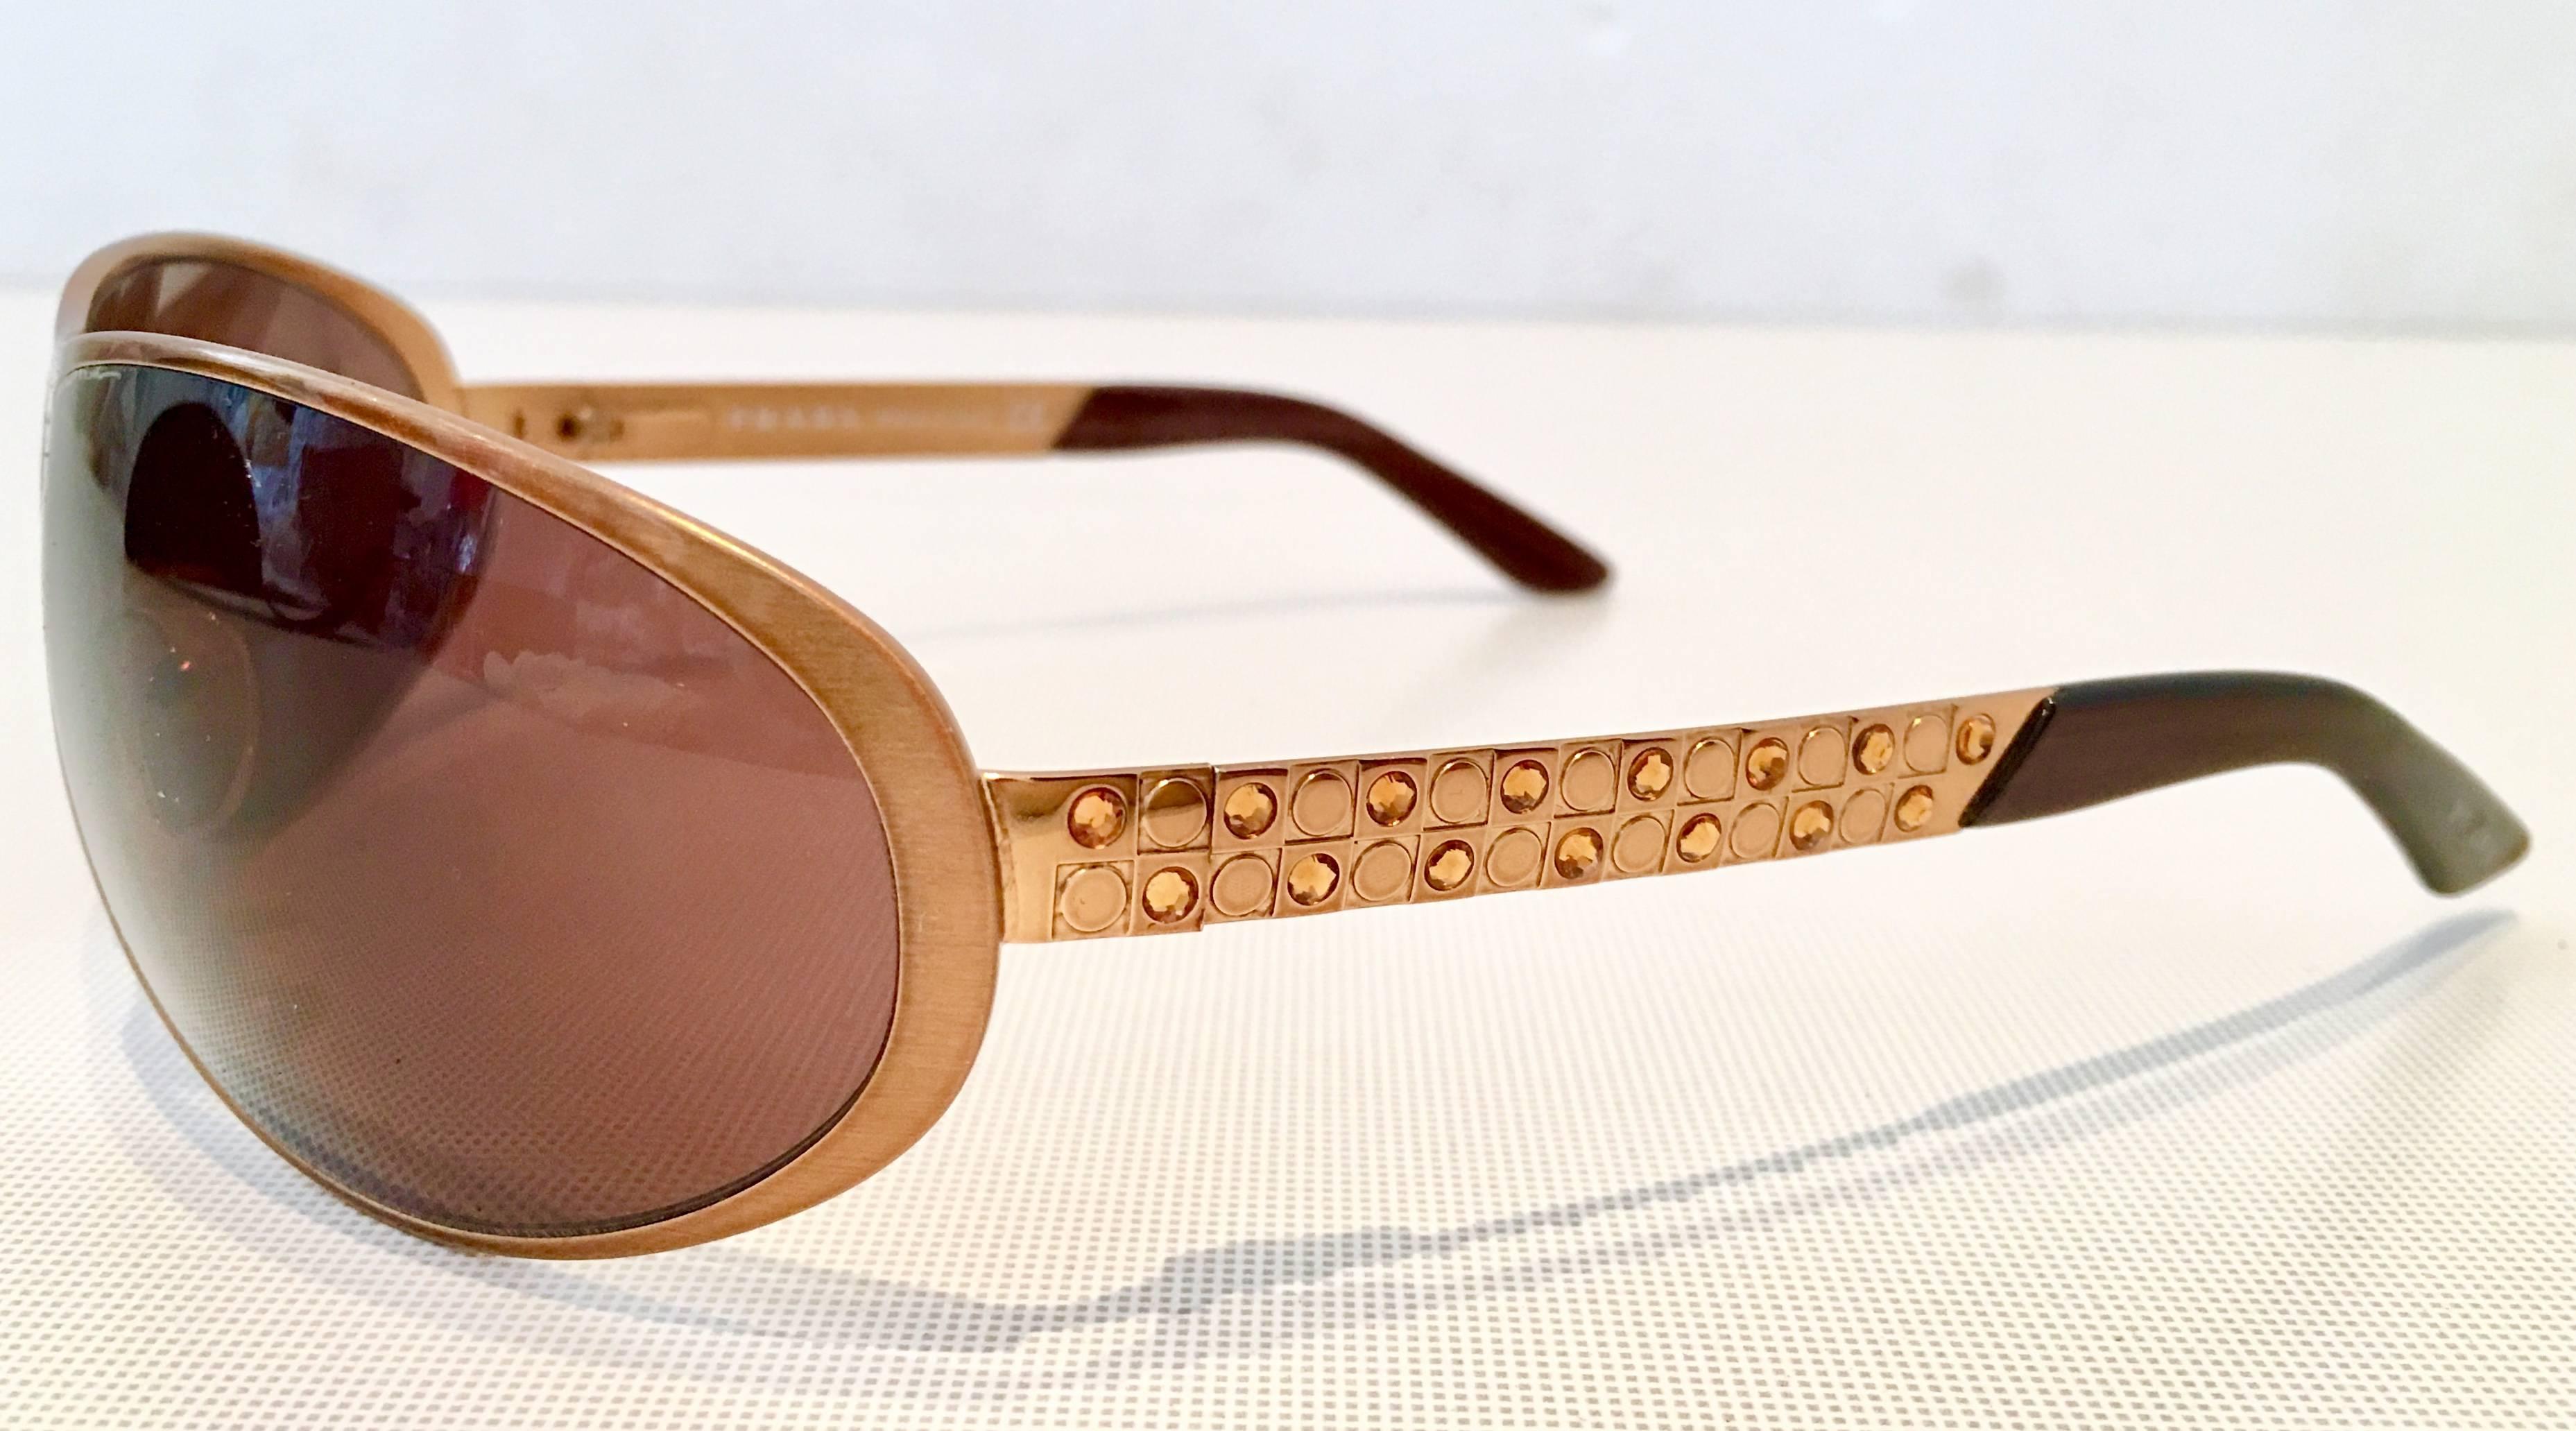 swarovski sunglasses 2012